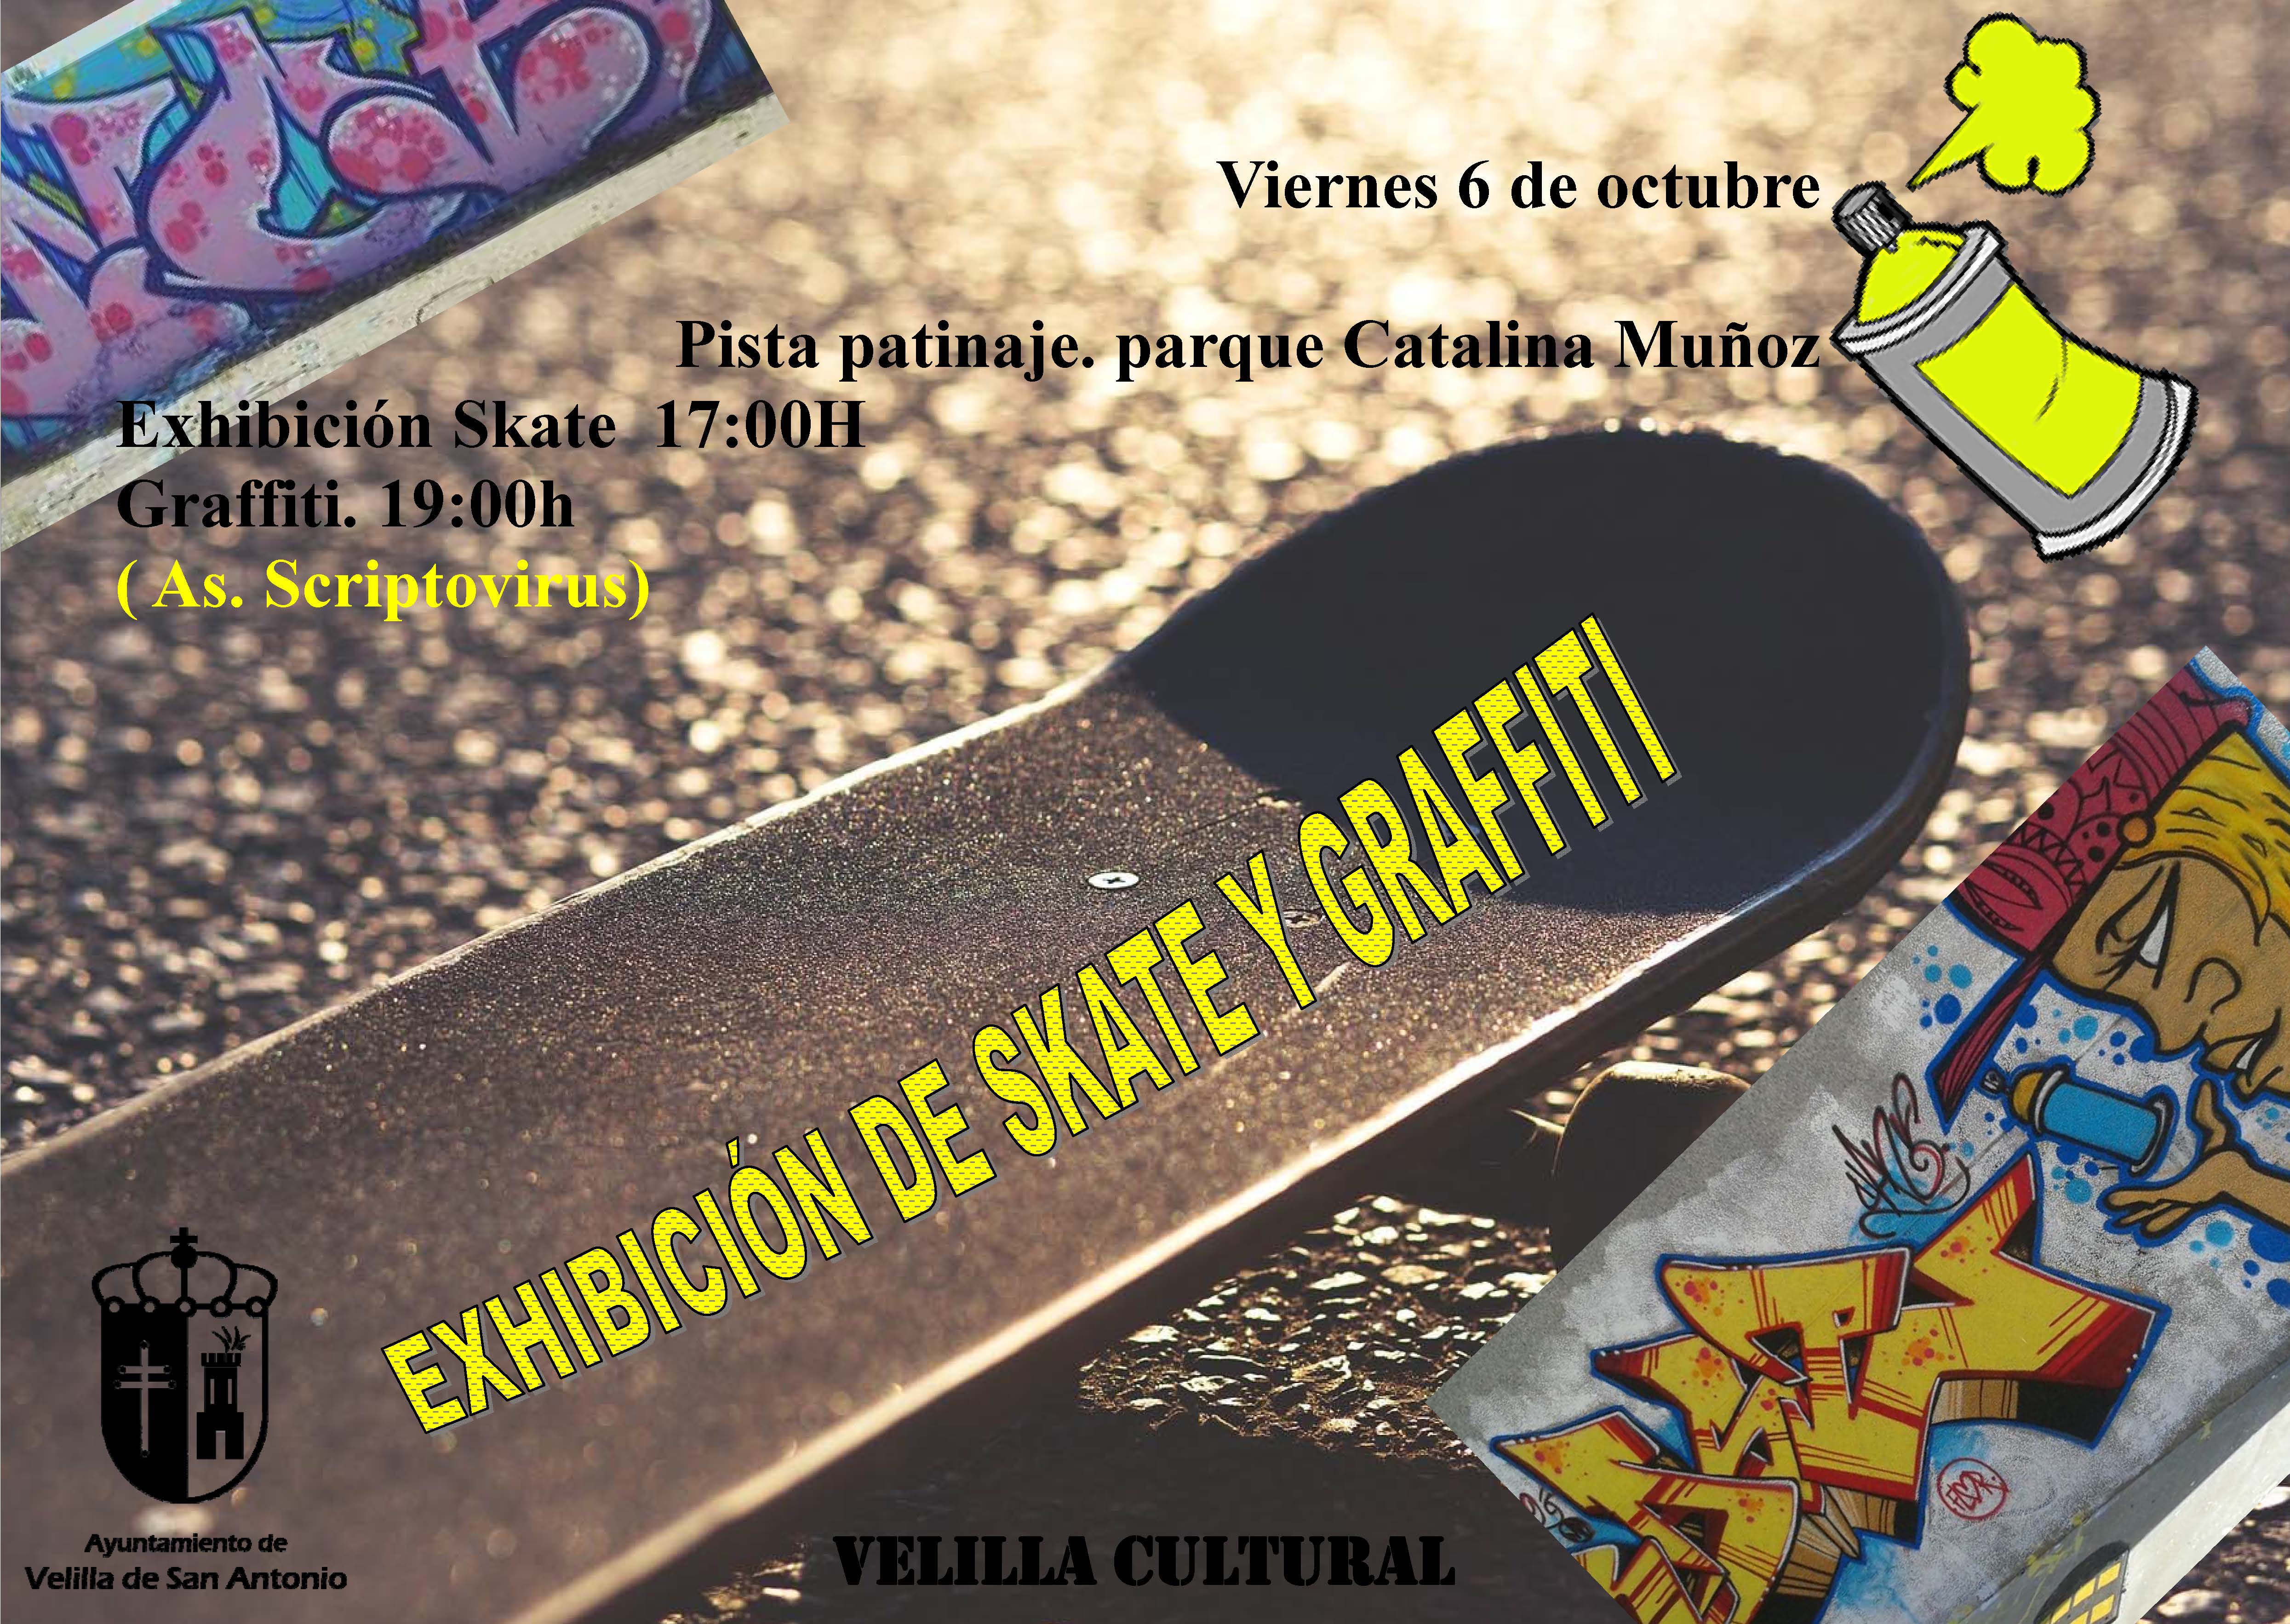 Exhibición de skate y graffiti